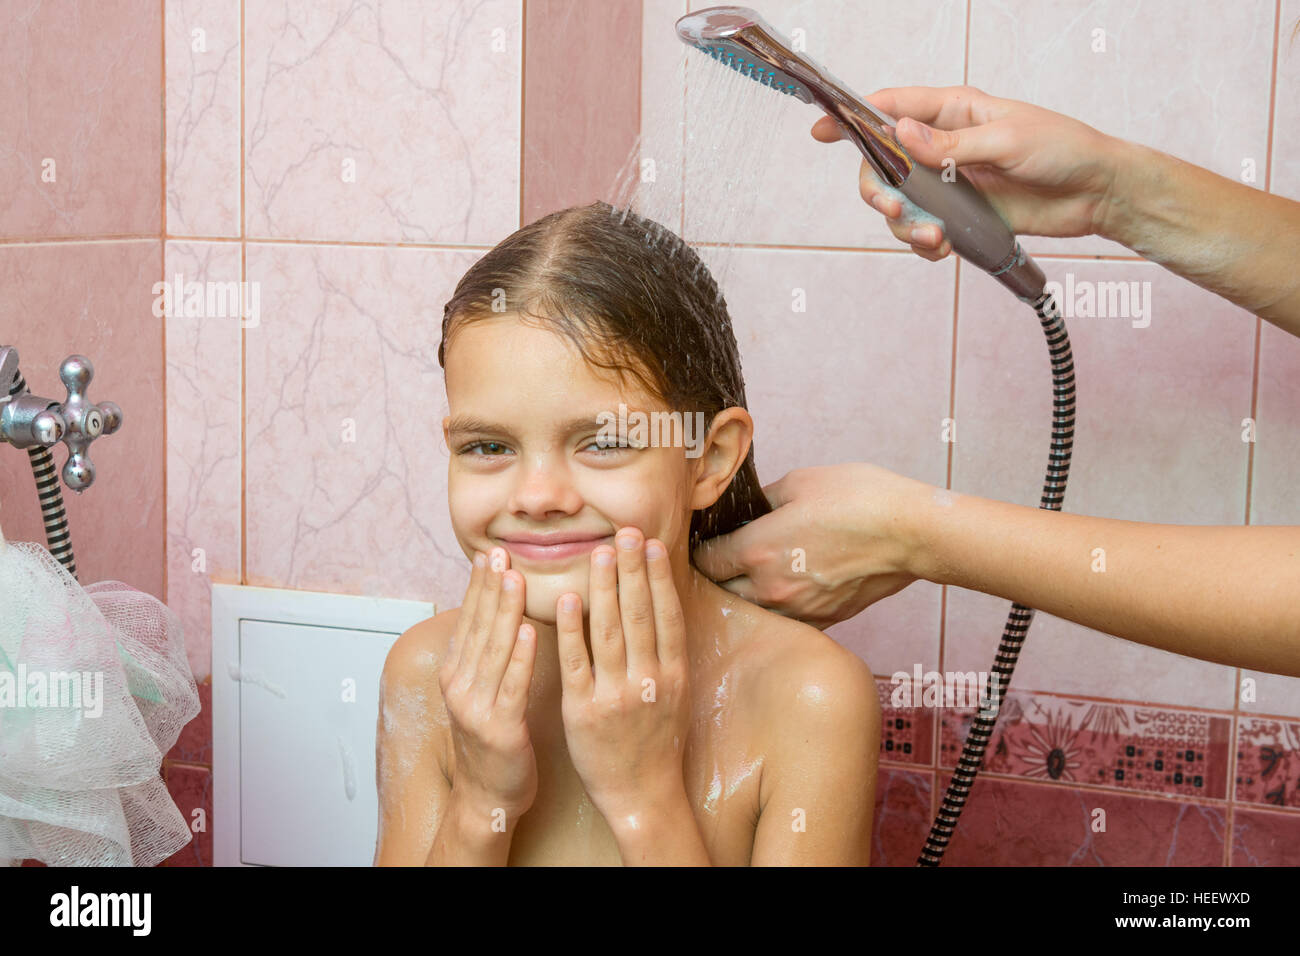 Siebenjährige Mädchen Baden In Einem Bad Unter Der Dusche Stockfotografie Alamy